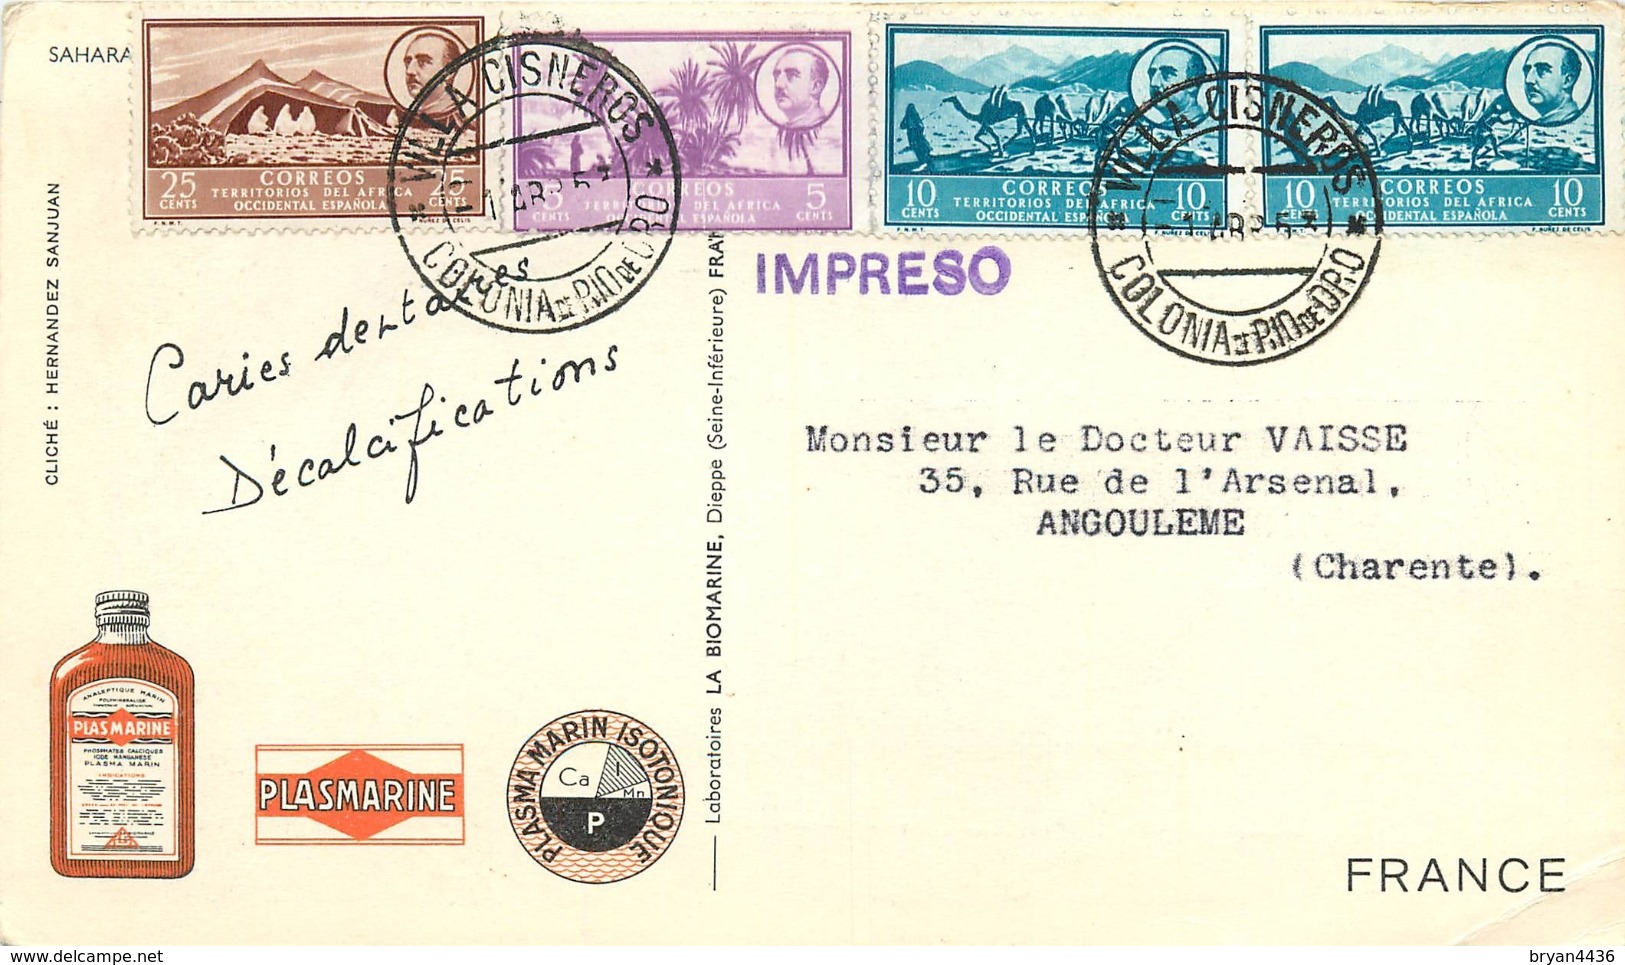 SAHAR - AFRIQUE OCCIDENTALE - 1953 - CORRESPONDANCE -  CARTE  BEDOIN  -  OBLITERATION SUR 4 TIMBRES  "FRANCO". - Asturies & Leon